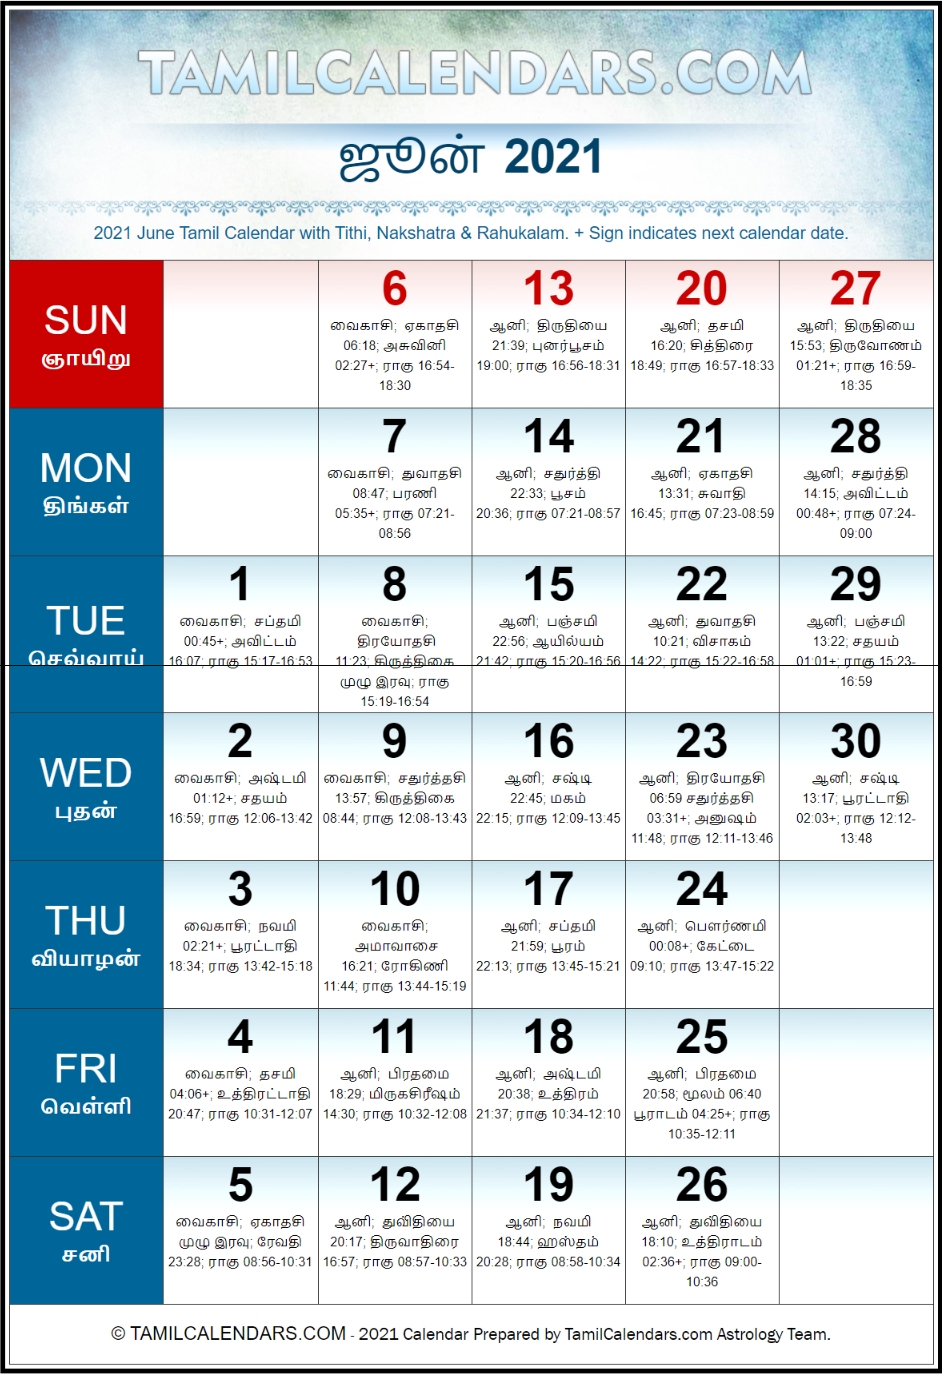 June 2021 Tamil Calendar | Plava Varusham Panchangam | Download Printable Pdf Calendars In Tamil Daily Calendar 2021 June